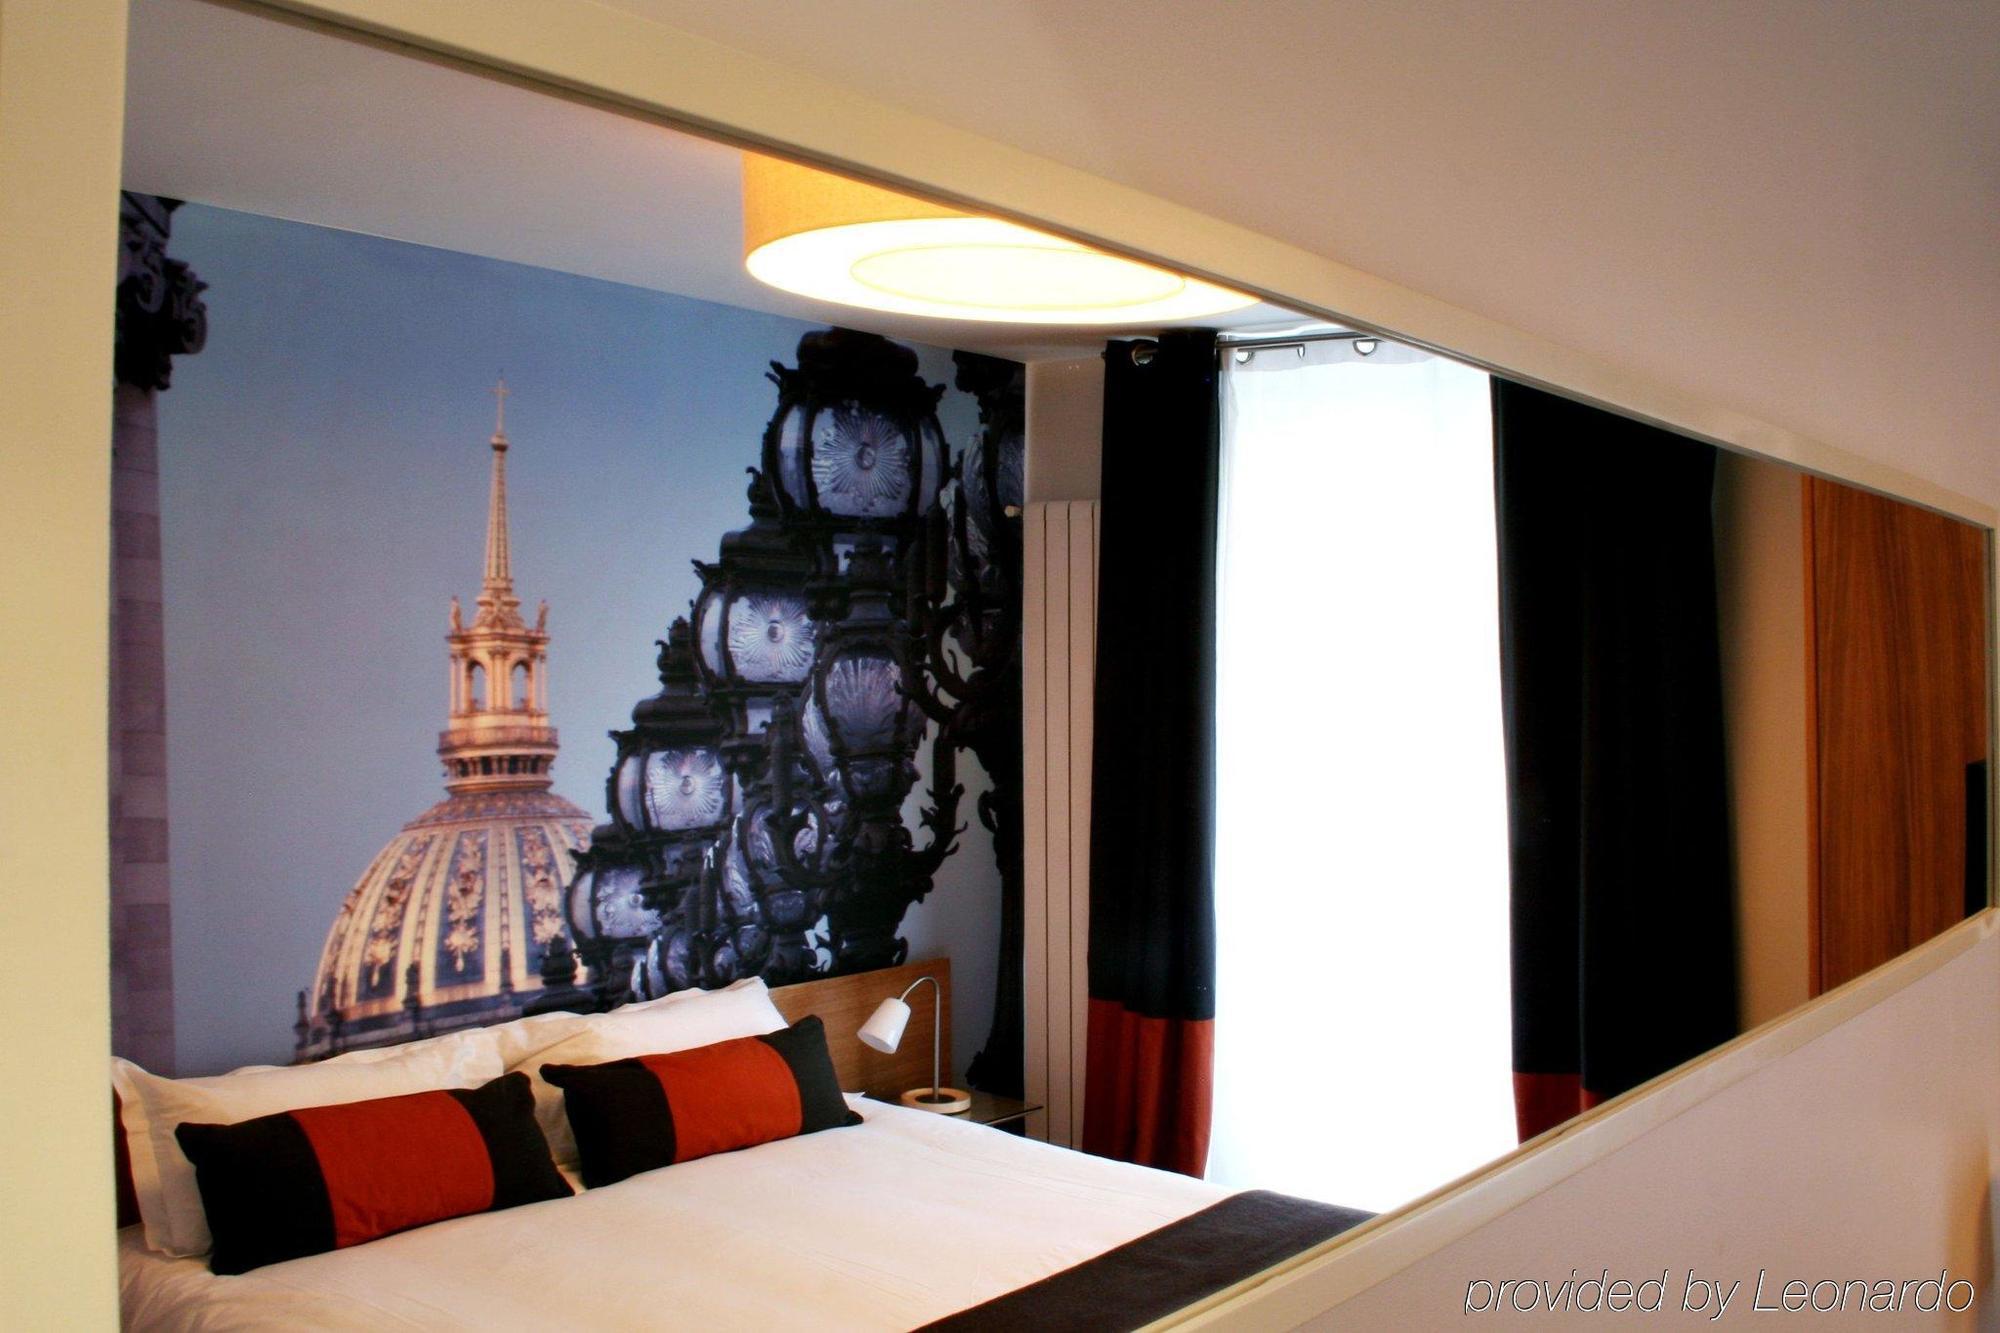 Le 20 Prieure Hotel Paris Exterior foto